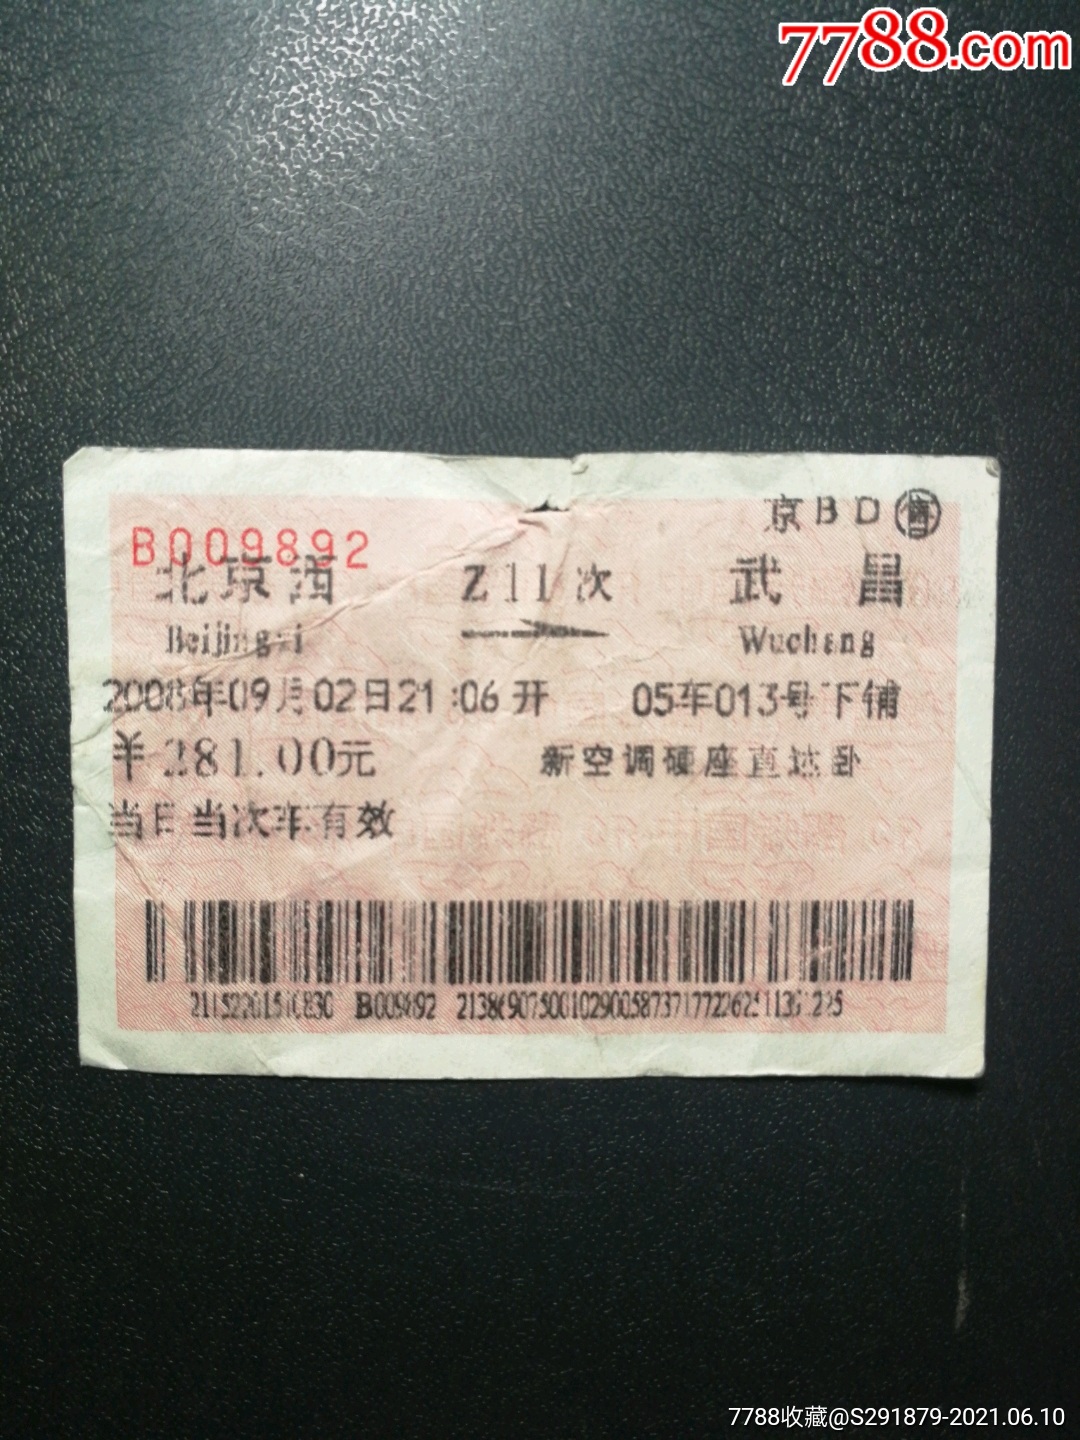 火车票北京西武昌z11次2008年